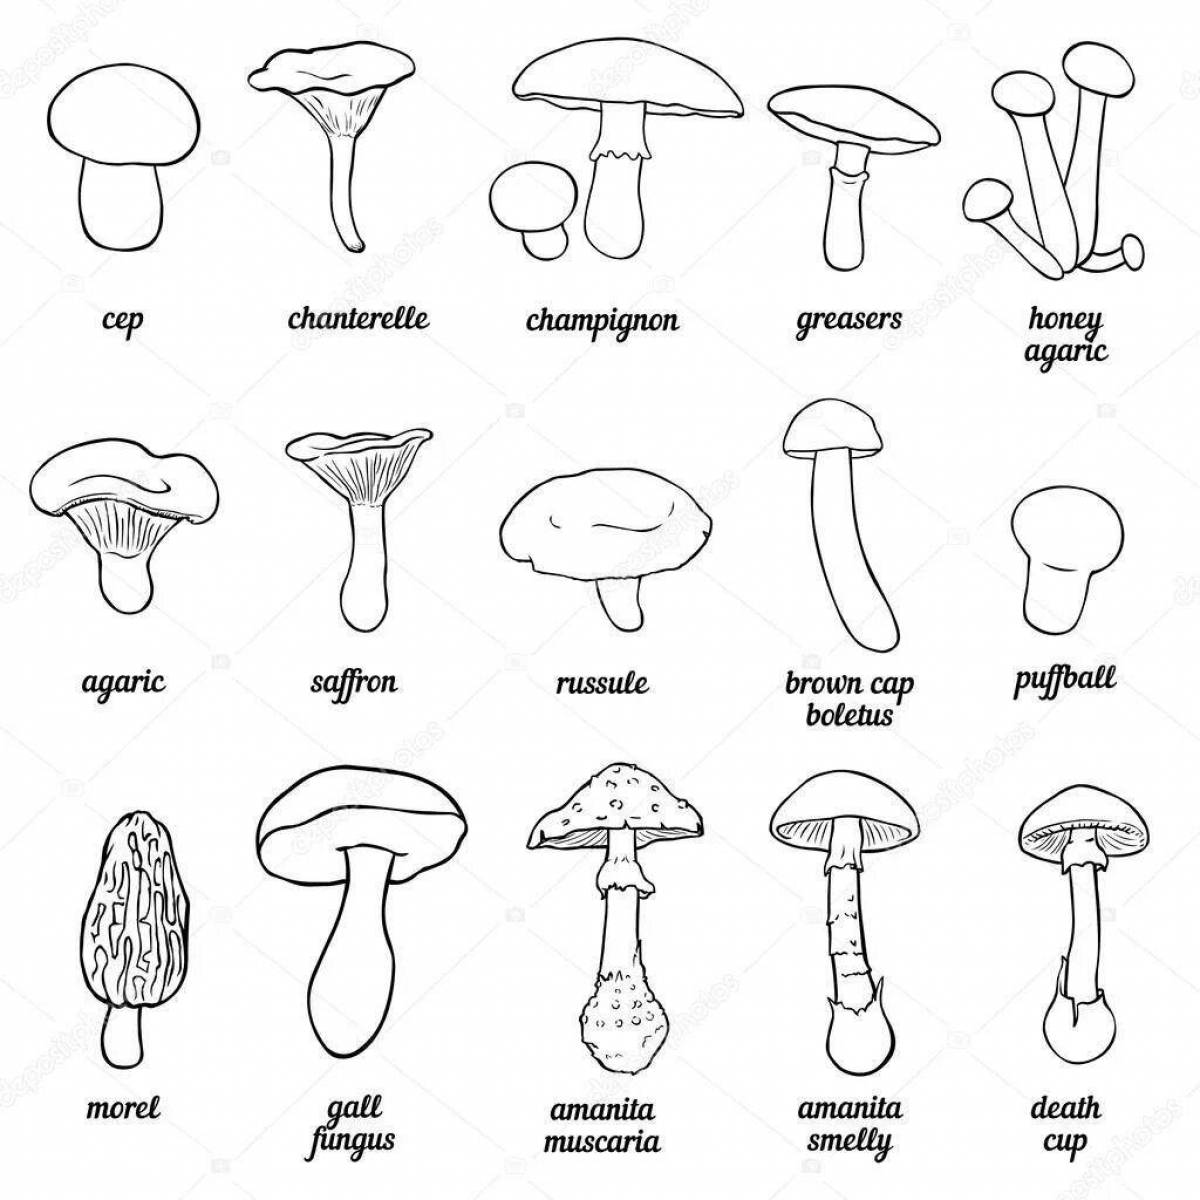 Coloring radiant edible mushrooms